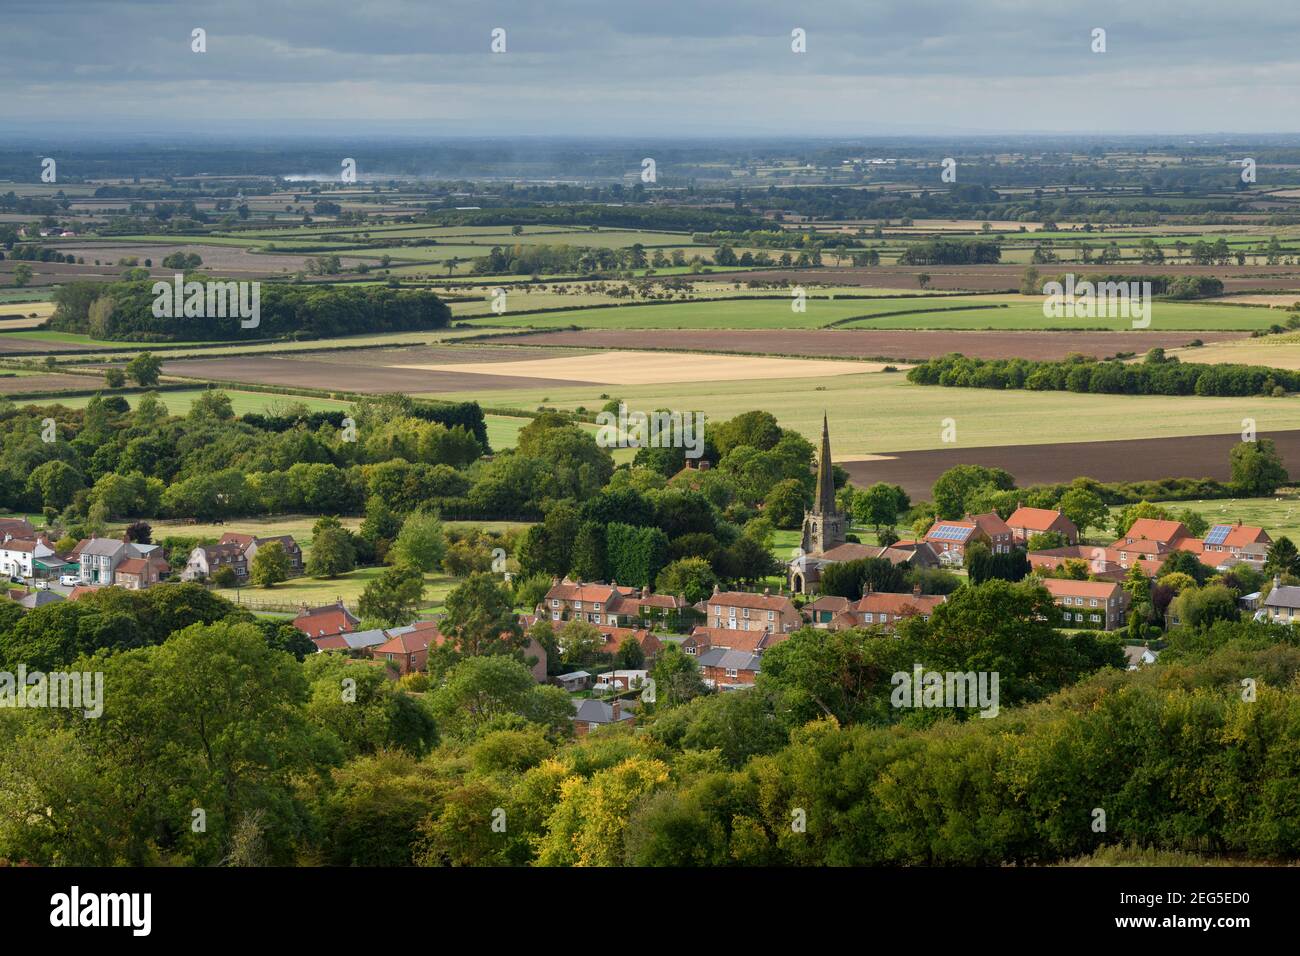 Landschaftlich schöner Blick auf das Dorf Bishop Wilton (Häuser und Kirche) & offene, flach liegende Felder im Tal von York - Yorkshire Wolds, East Riding, England Großbritannien. Stockfoto